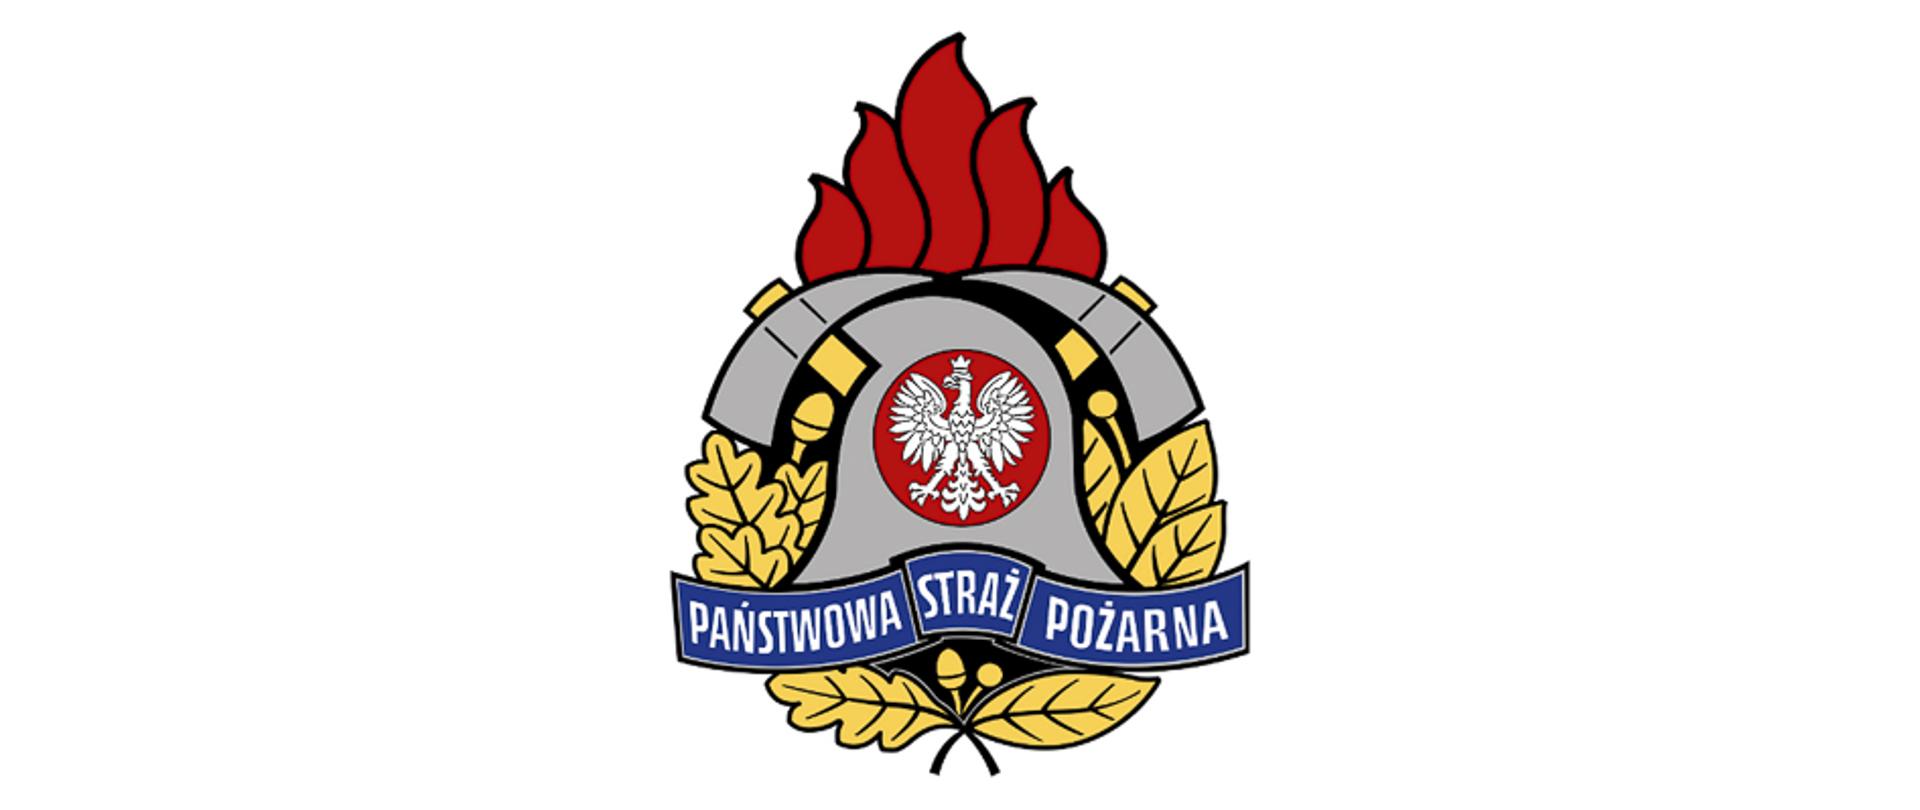 Logo PSP – w centrum znajduje się godło Państwa Polskiego, hełm strażacki i dwa toporki, otoczone płomieniem od góry i liśćmi dębu i wawrzynu z boków. Na niebieskiej wstędze napis Państwowa Straż Pożarna